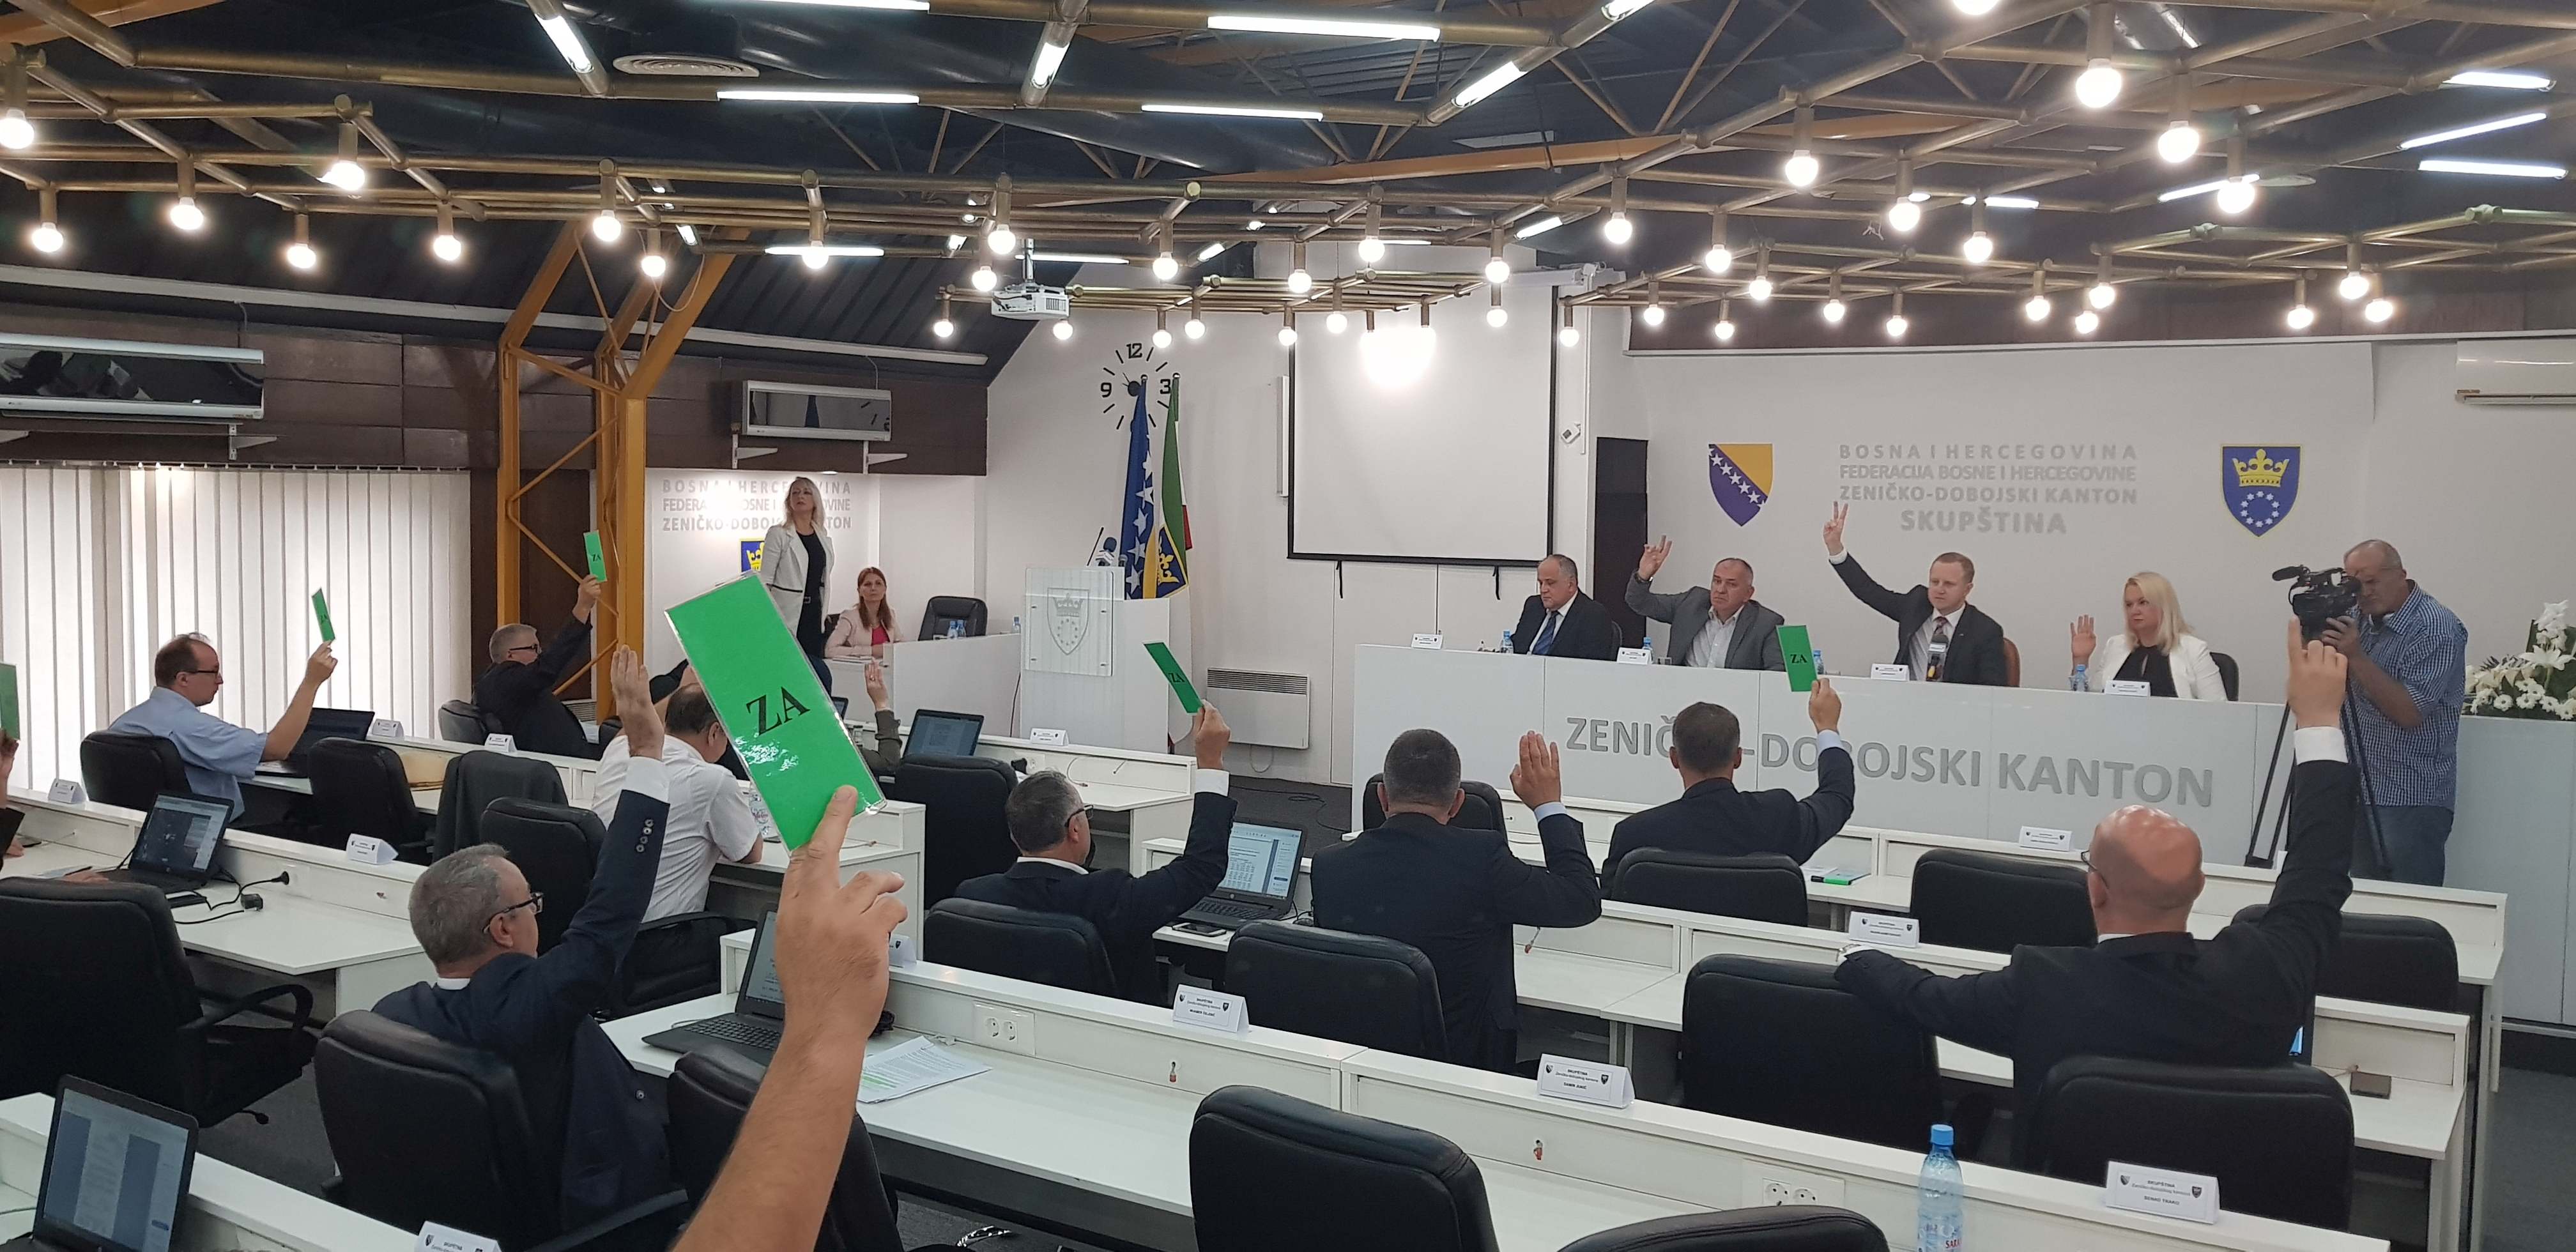 Slobodna Bosna: Zašto nije formirana vlast u ZE-DO kantonu?